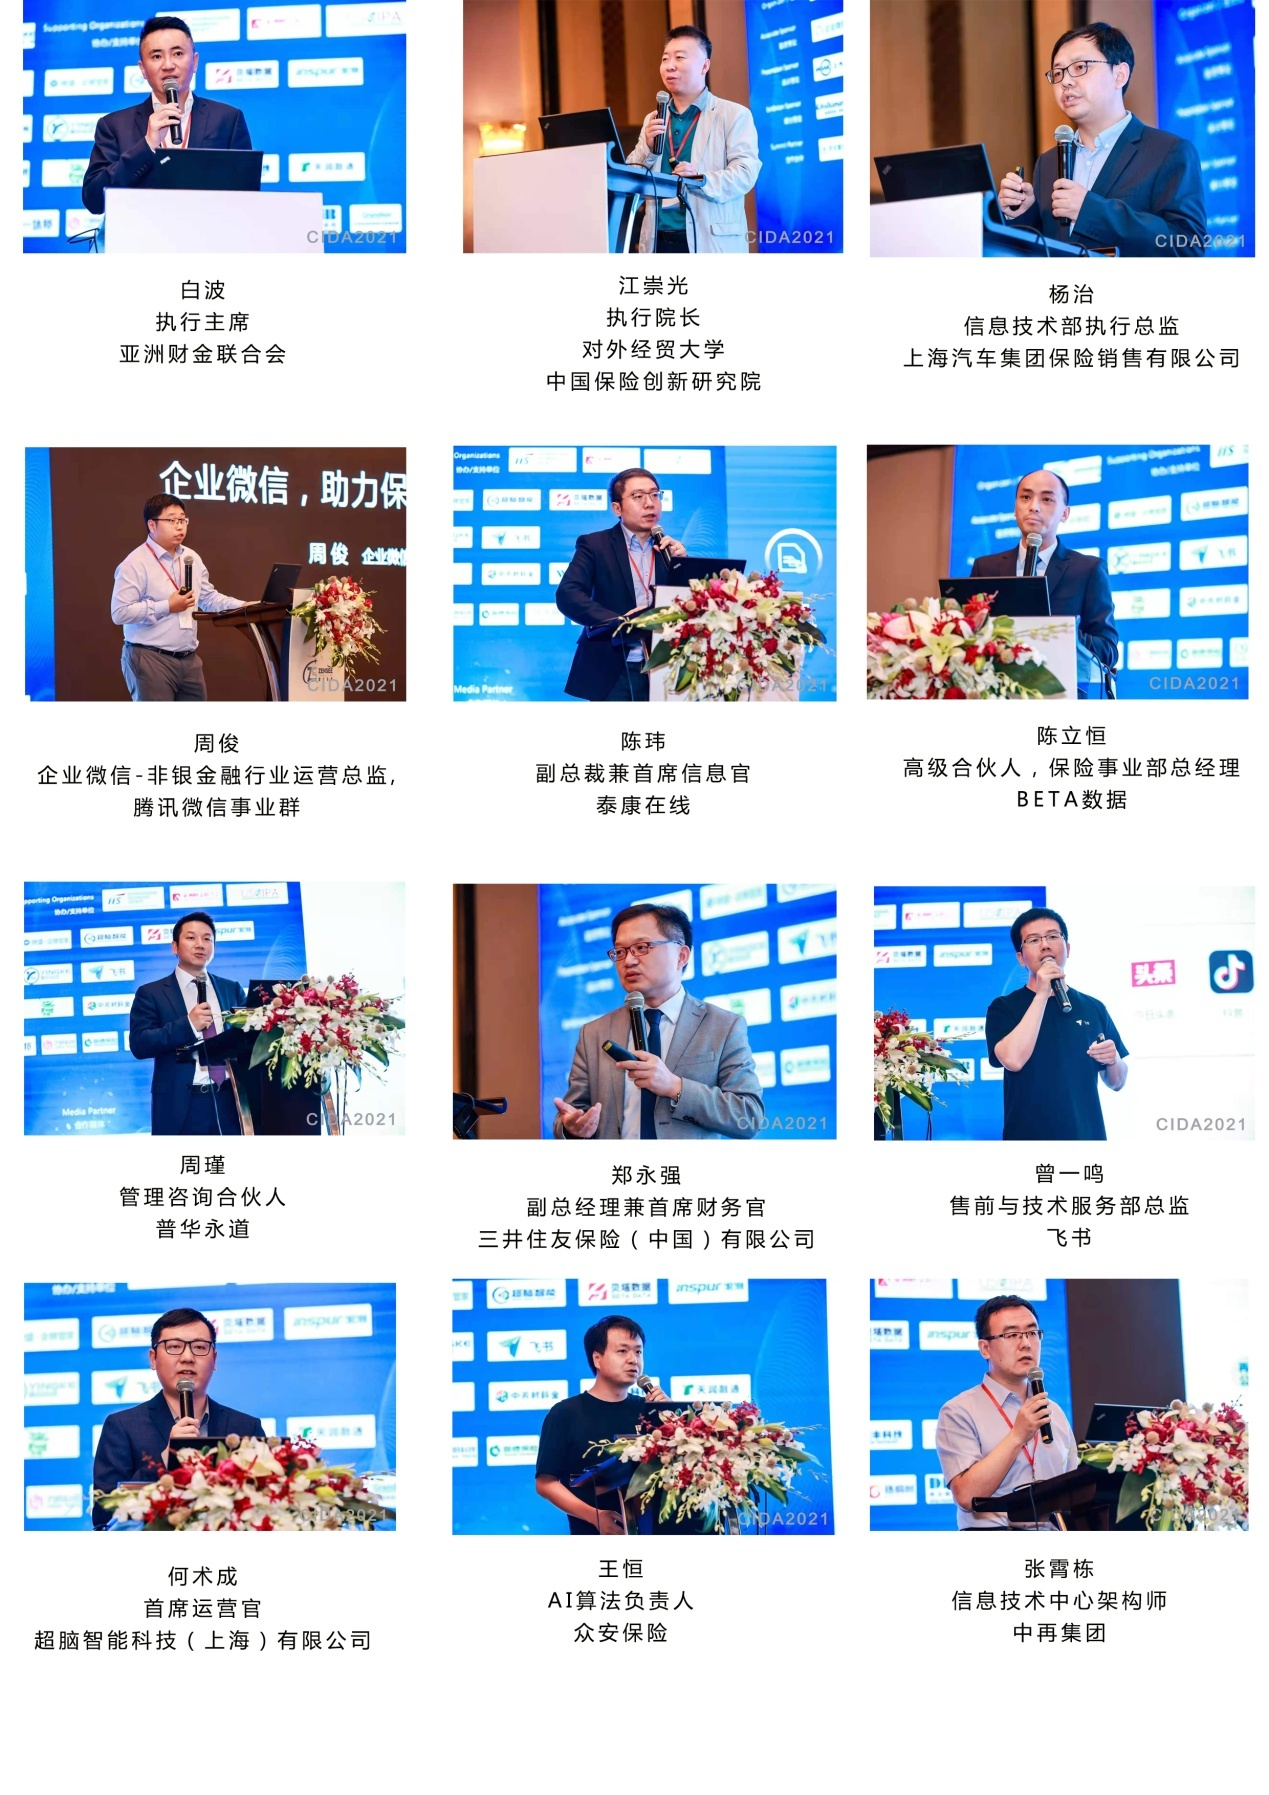 瞻仕咨询|第三届中国保险业数字化与人工智能发展大会2021暨“金保奖”颁奖典礼在沪圆满落幕